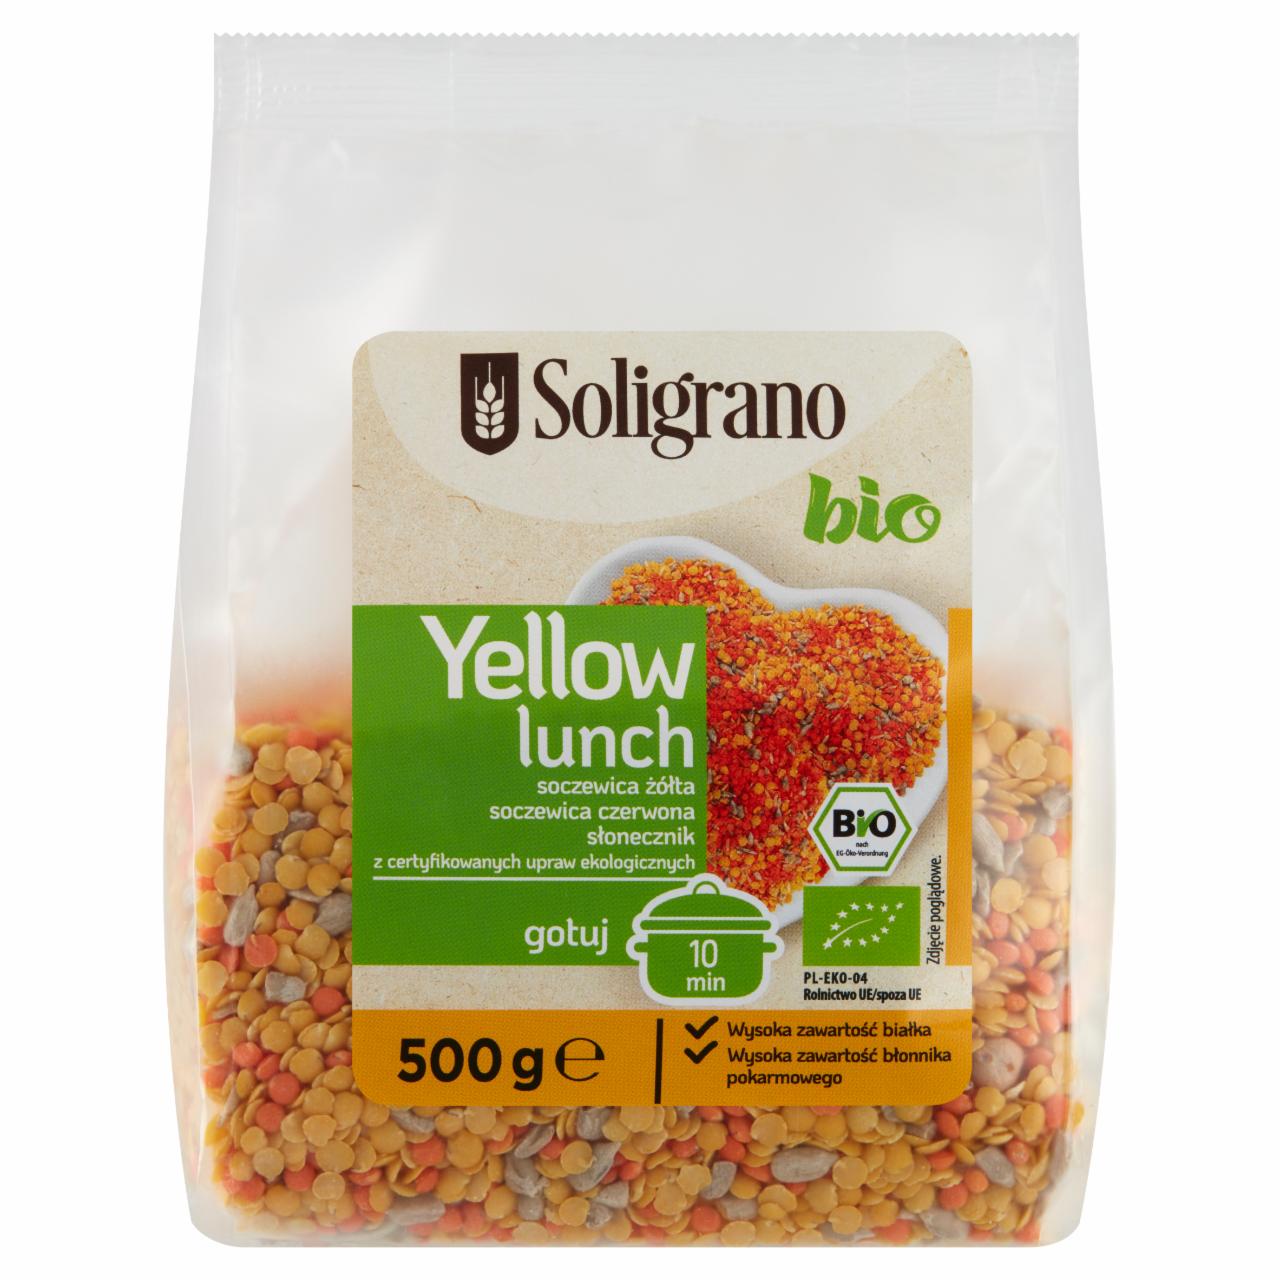 Zdjęcia - Soligrano Bio Yellow Lunch Soczewica żółta soczewica czerwona słonecznik 500 g